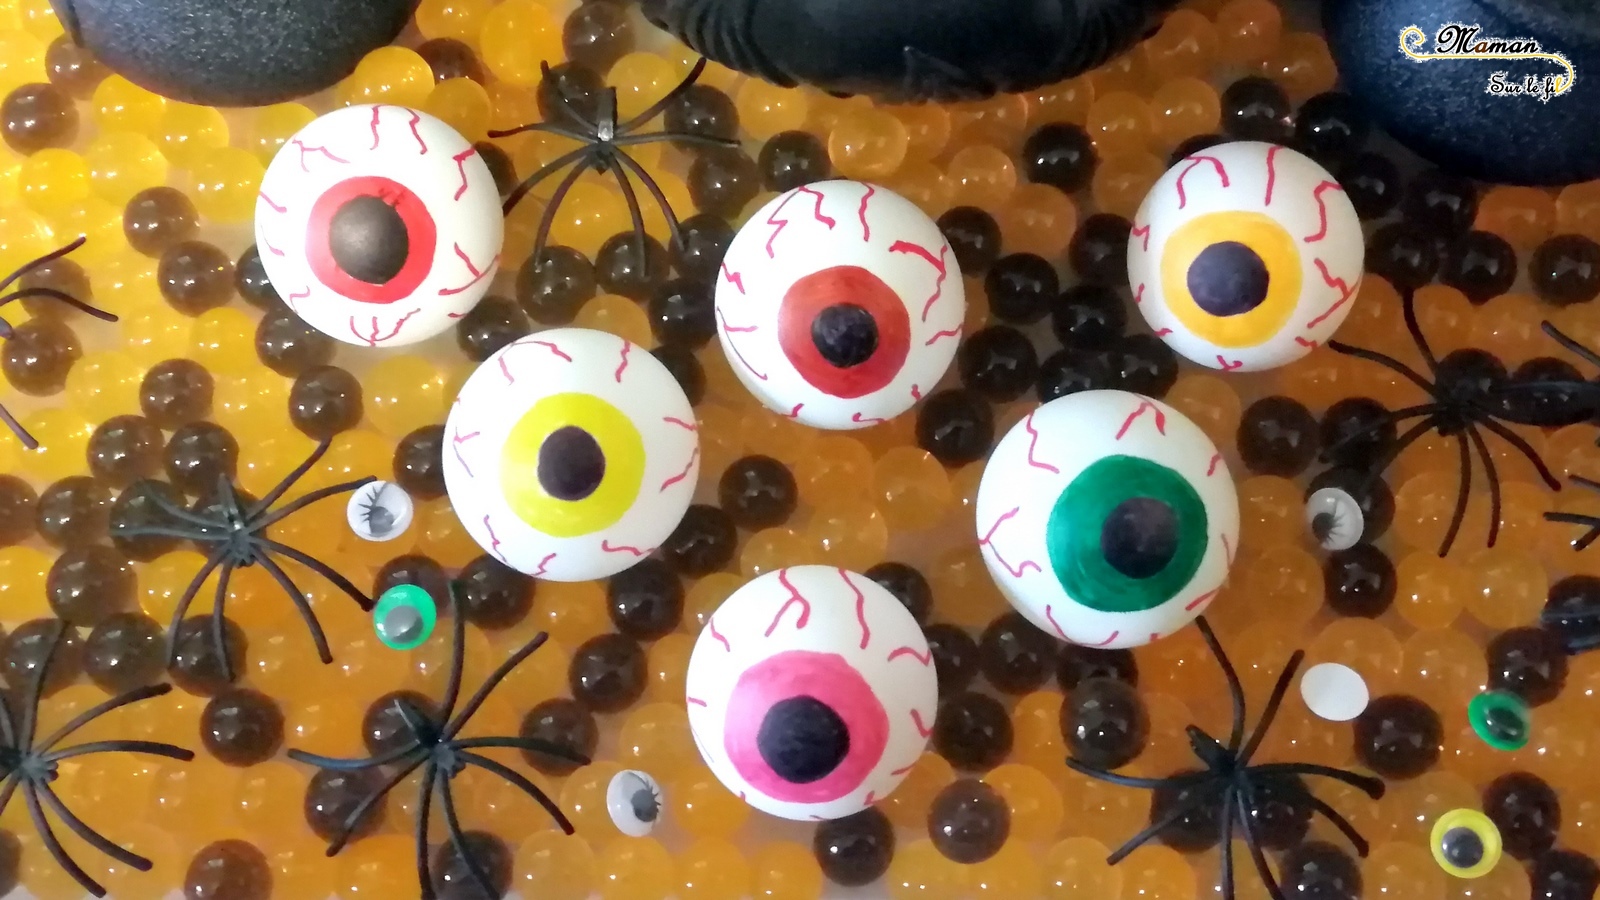 Yeux globuleux de cyclope faits maison pour Halloween avec des balles de ping-pong - Activité enfant - Bricolage - DIY